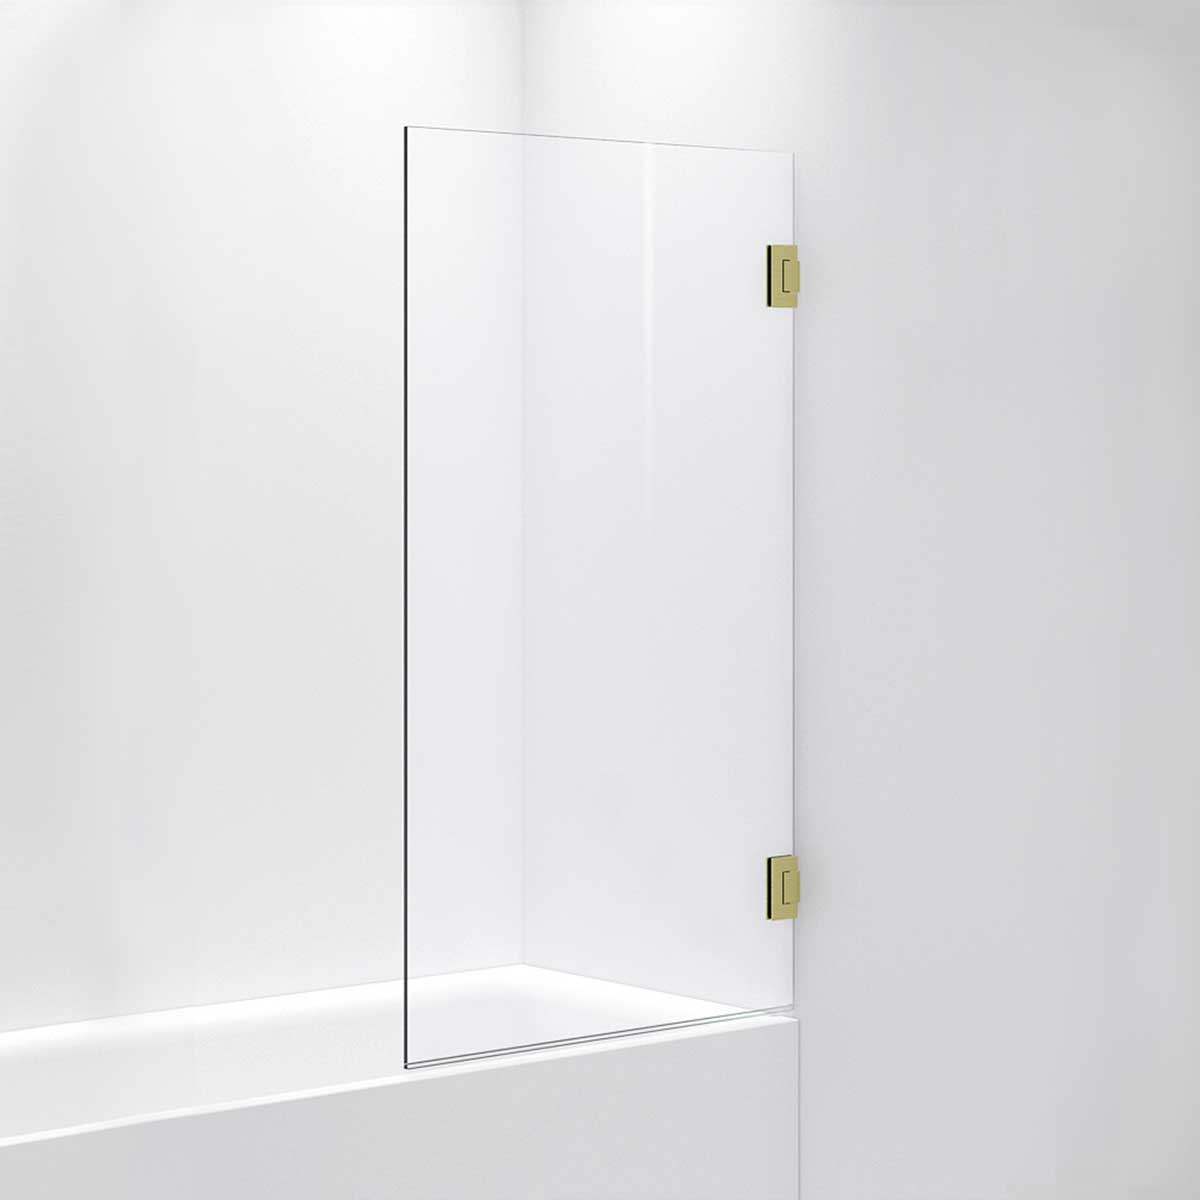 INR Iconic Nordic Rooms Badekarvegg ARC 17 Måltilpasset Brushed Brass / Opal Klart Glass Badekarvegg